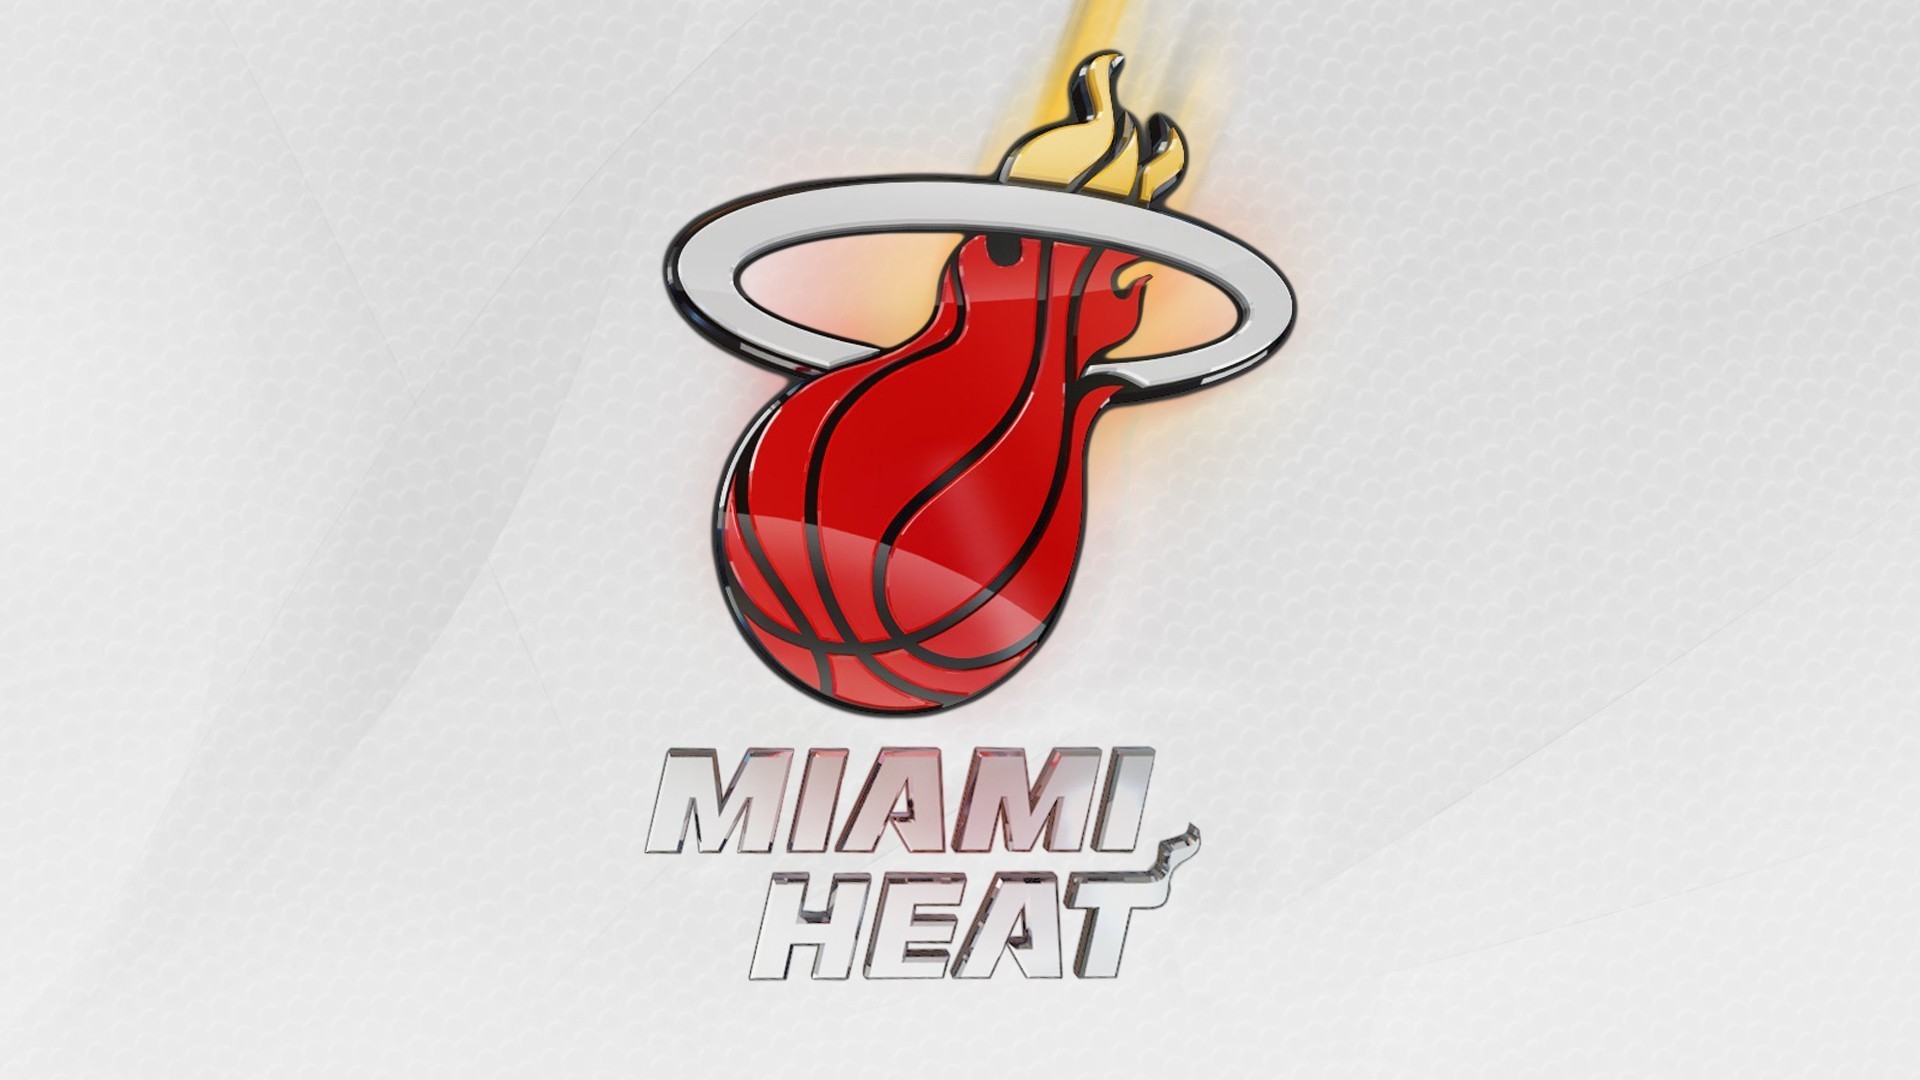 1920x1080  1920x1200 NBA San Antonio Spurs Logo 1920x1200 wallpaper.  Download. Download Miami Heat Logo Wallpaper